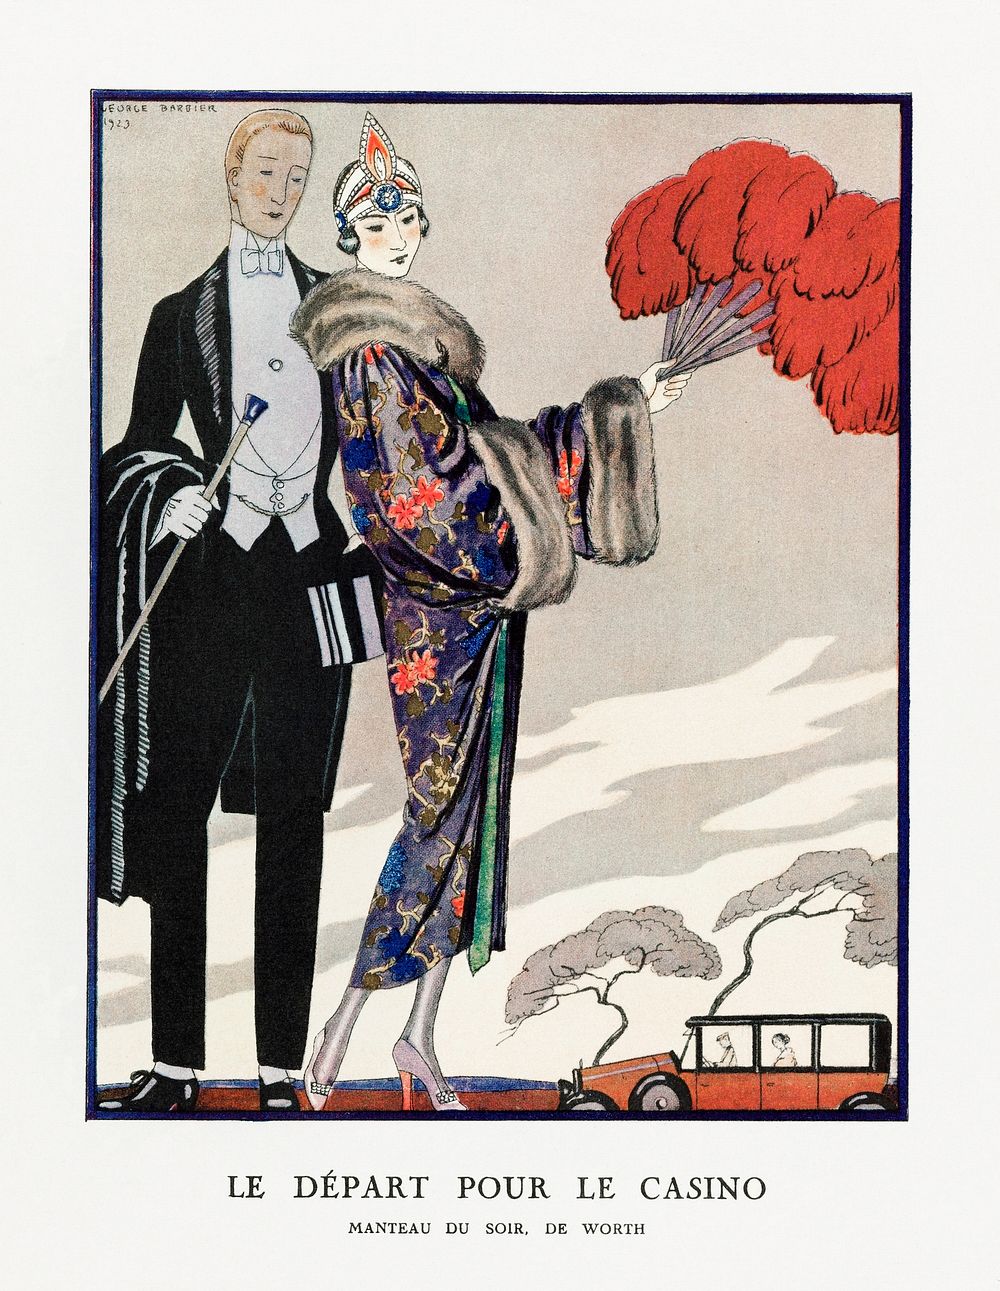 Le d&eacute;part pour le casino, Manteau du soir, de Worth (1923) fashion illustration in high resolution by George Barbier.…